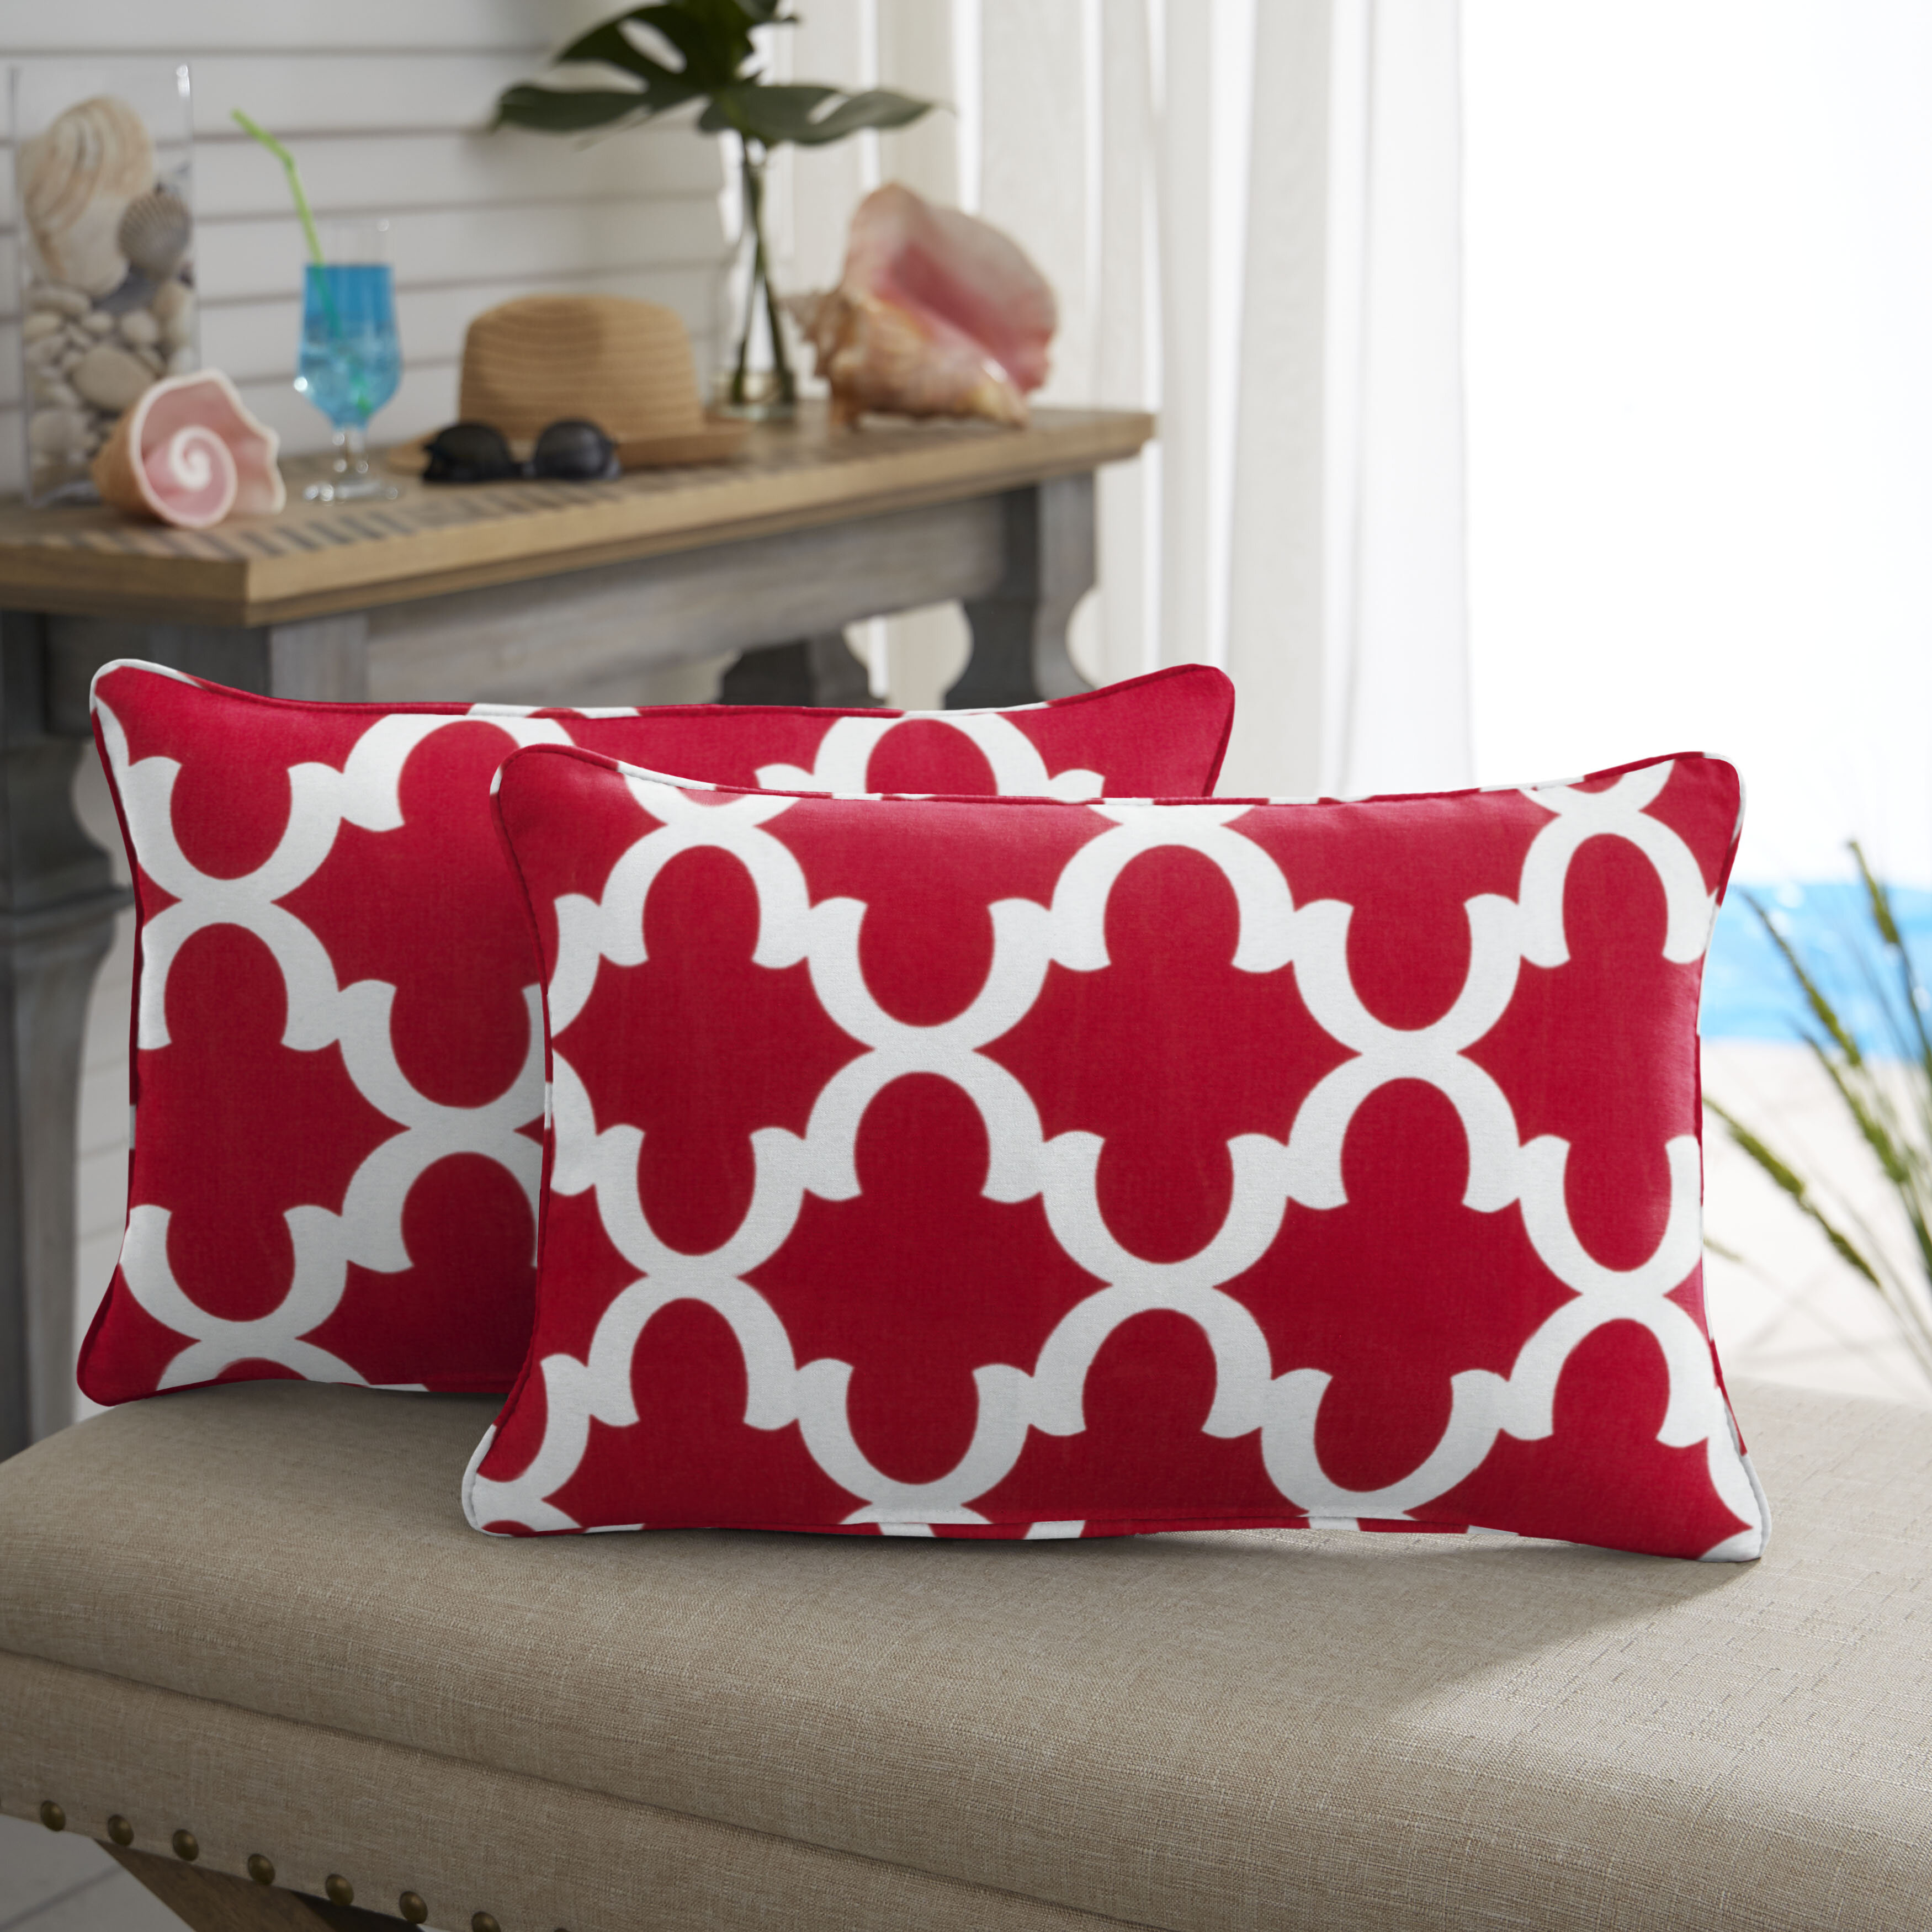 red lumbar pillow